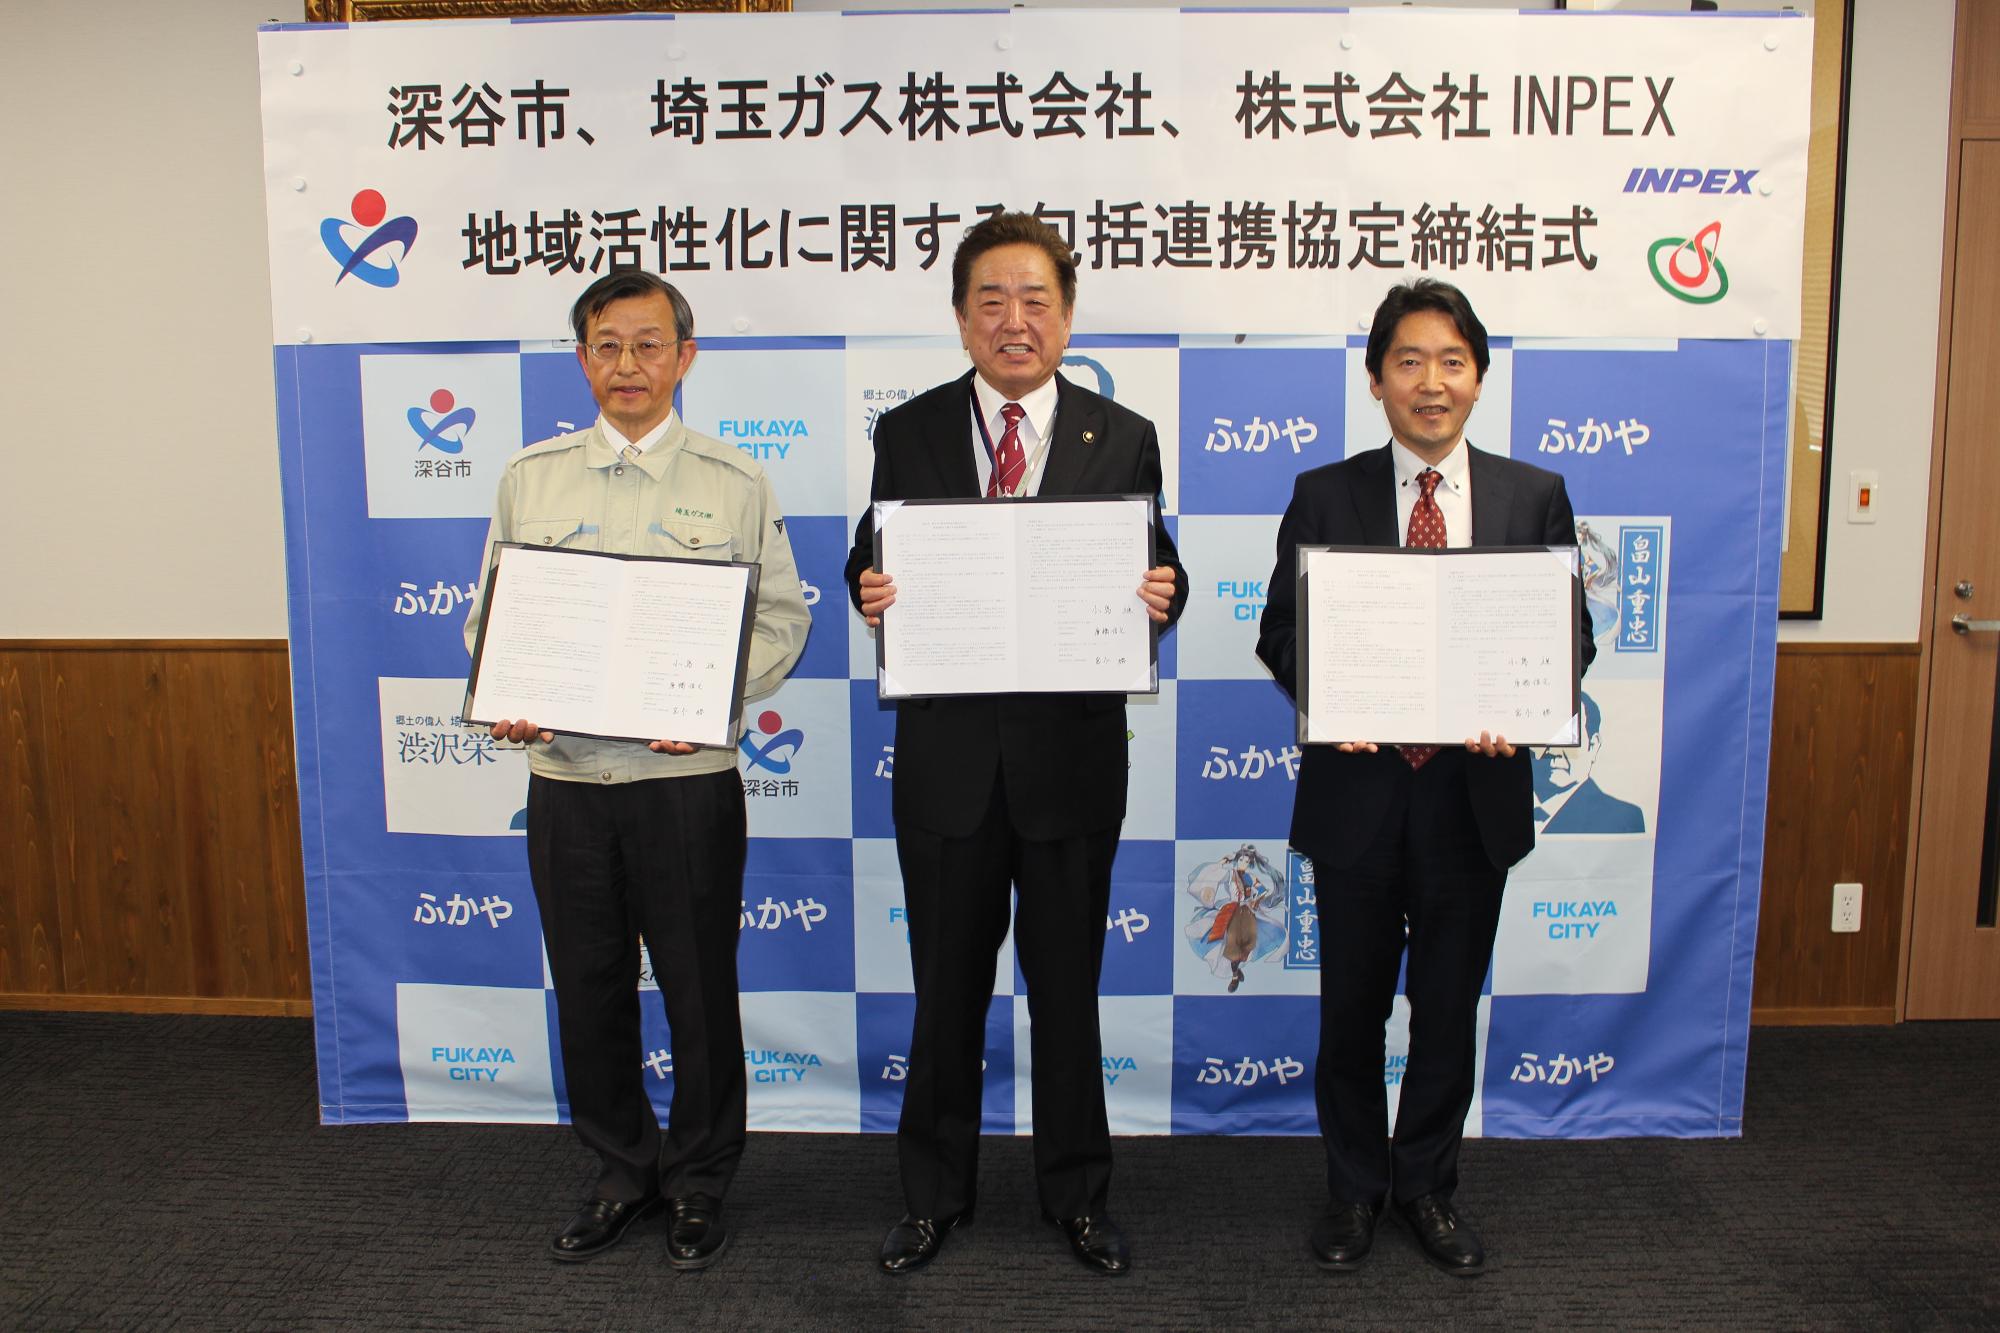 埼玉ガス株式会社、株式会社INPEXとの包括連携協定締結式